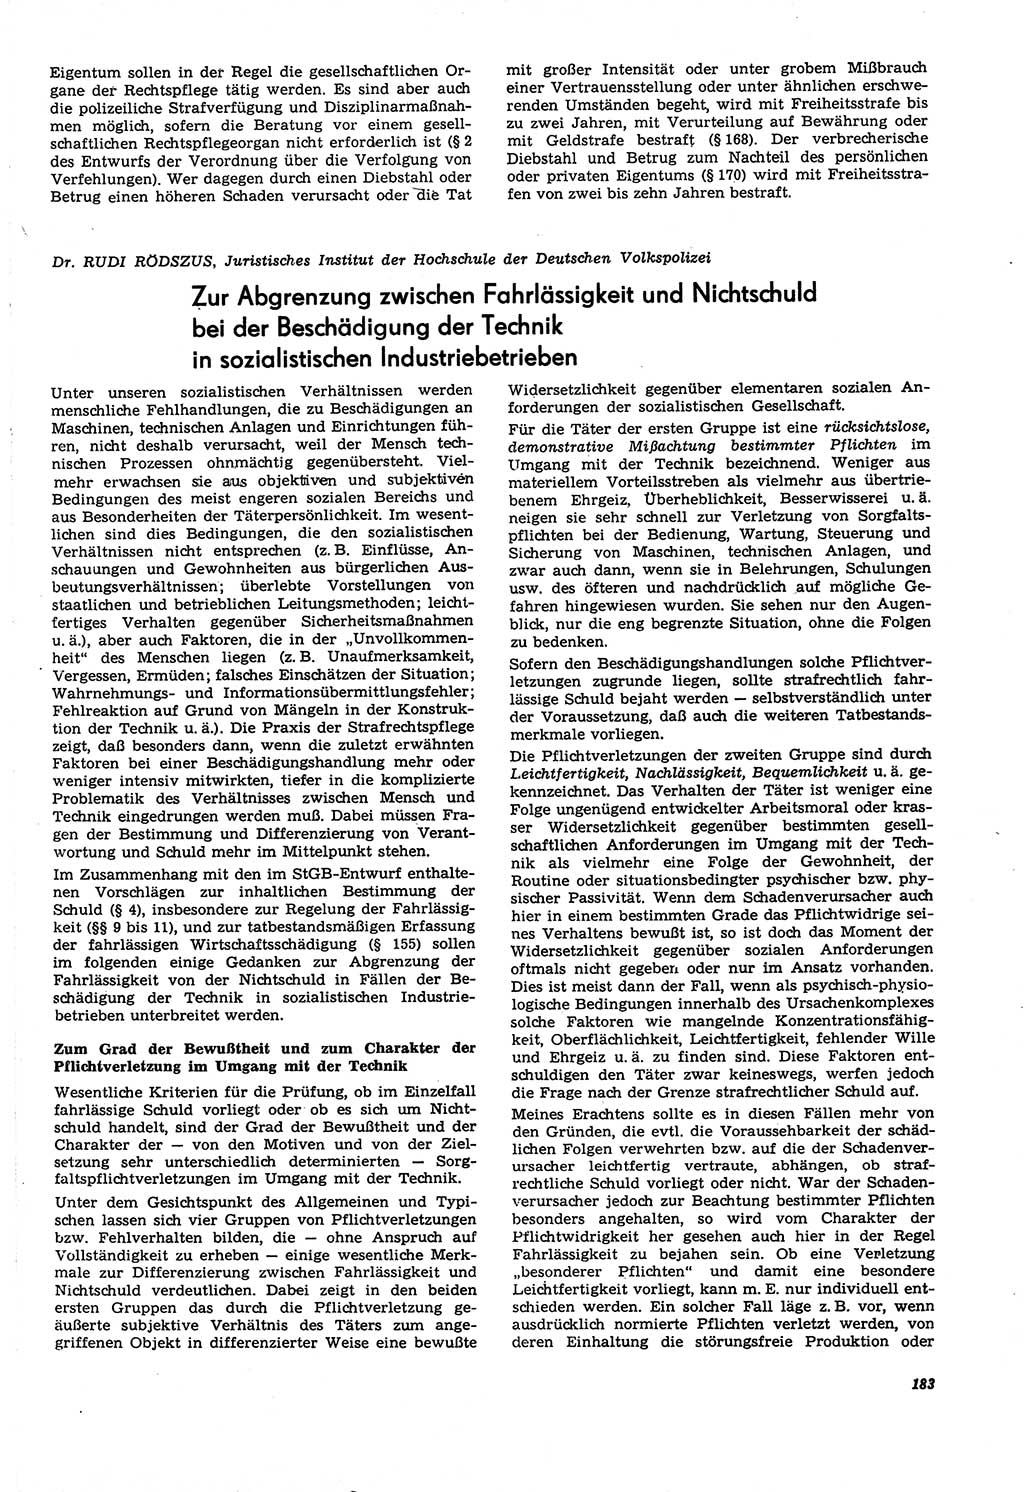 Neue Justiz (NJ), Zeitschrift für Recht und Rechtswissenschaft [Deutsche Demokratische Republik (DDR)], 21. Jahrgang 1967, Seite 183 (NJ DDR 1967, S. 183)